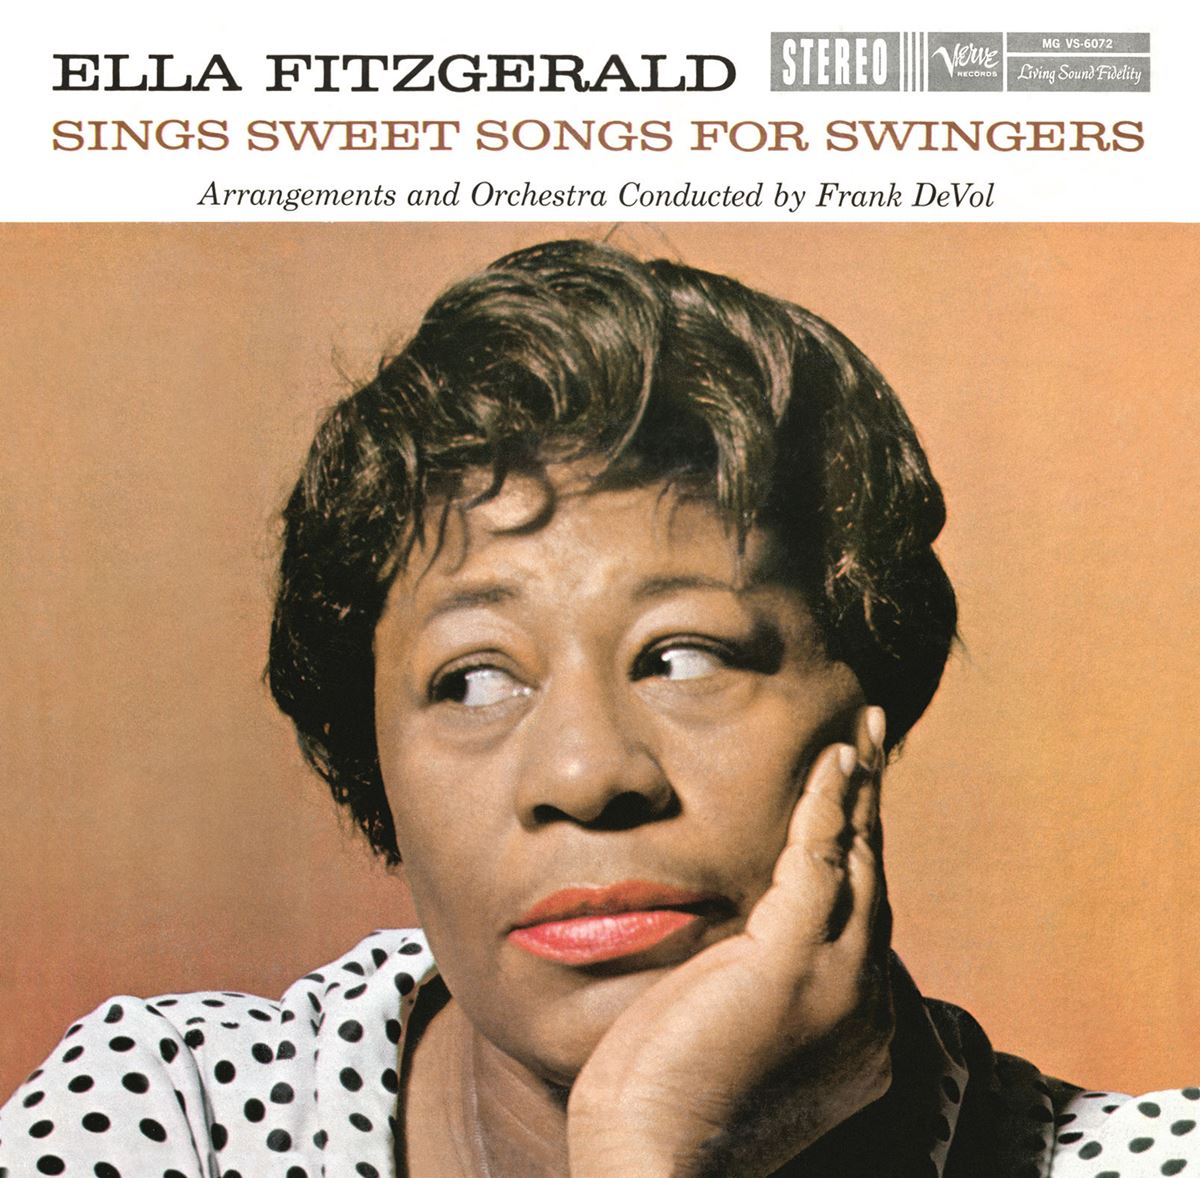  Ella Fitzgerald「Sings Sweet Songs For Swingers」專輯無損壓縮檔案。